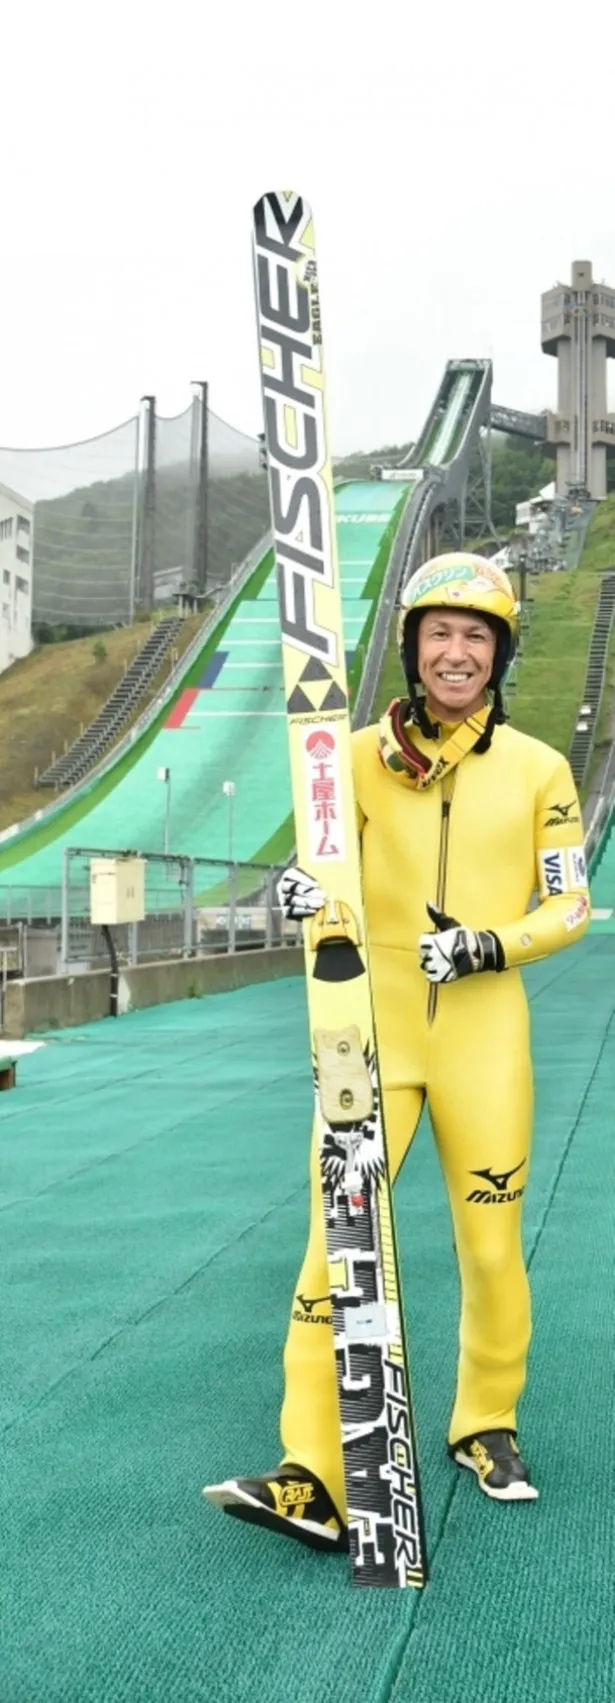 スキー界の“レジェンド”葛西紀明選手